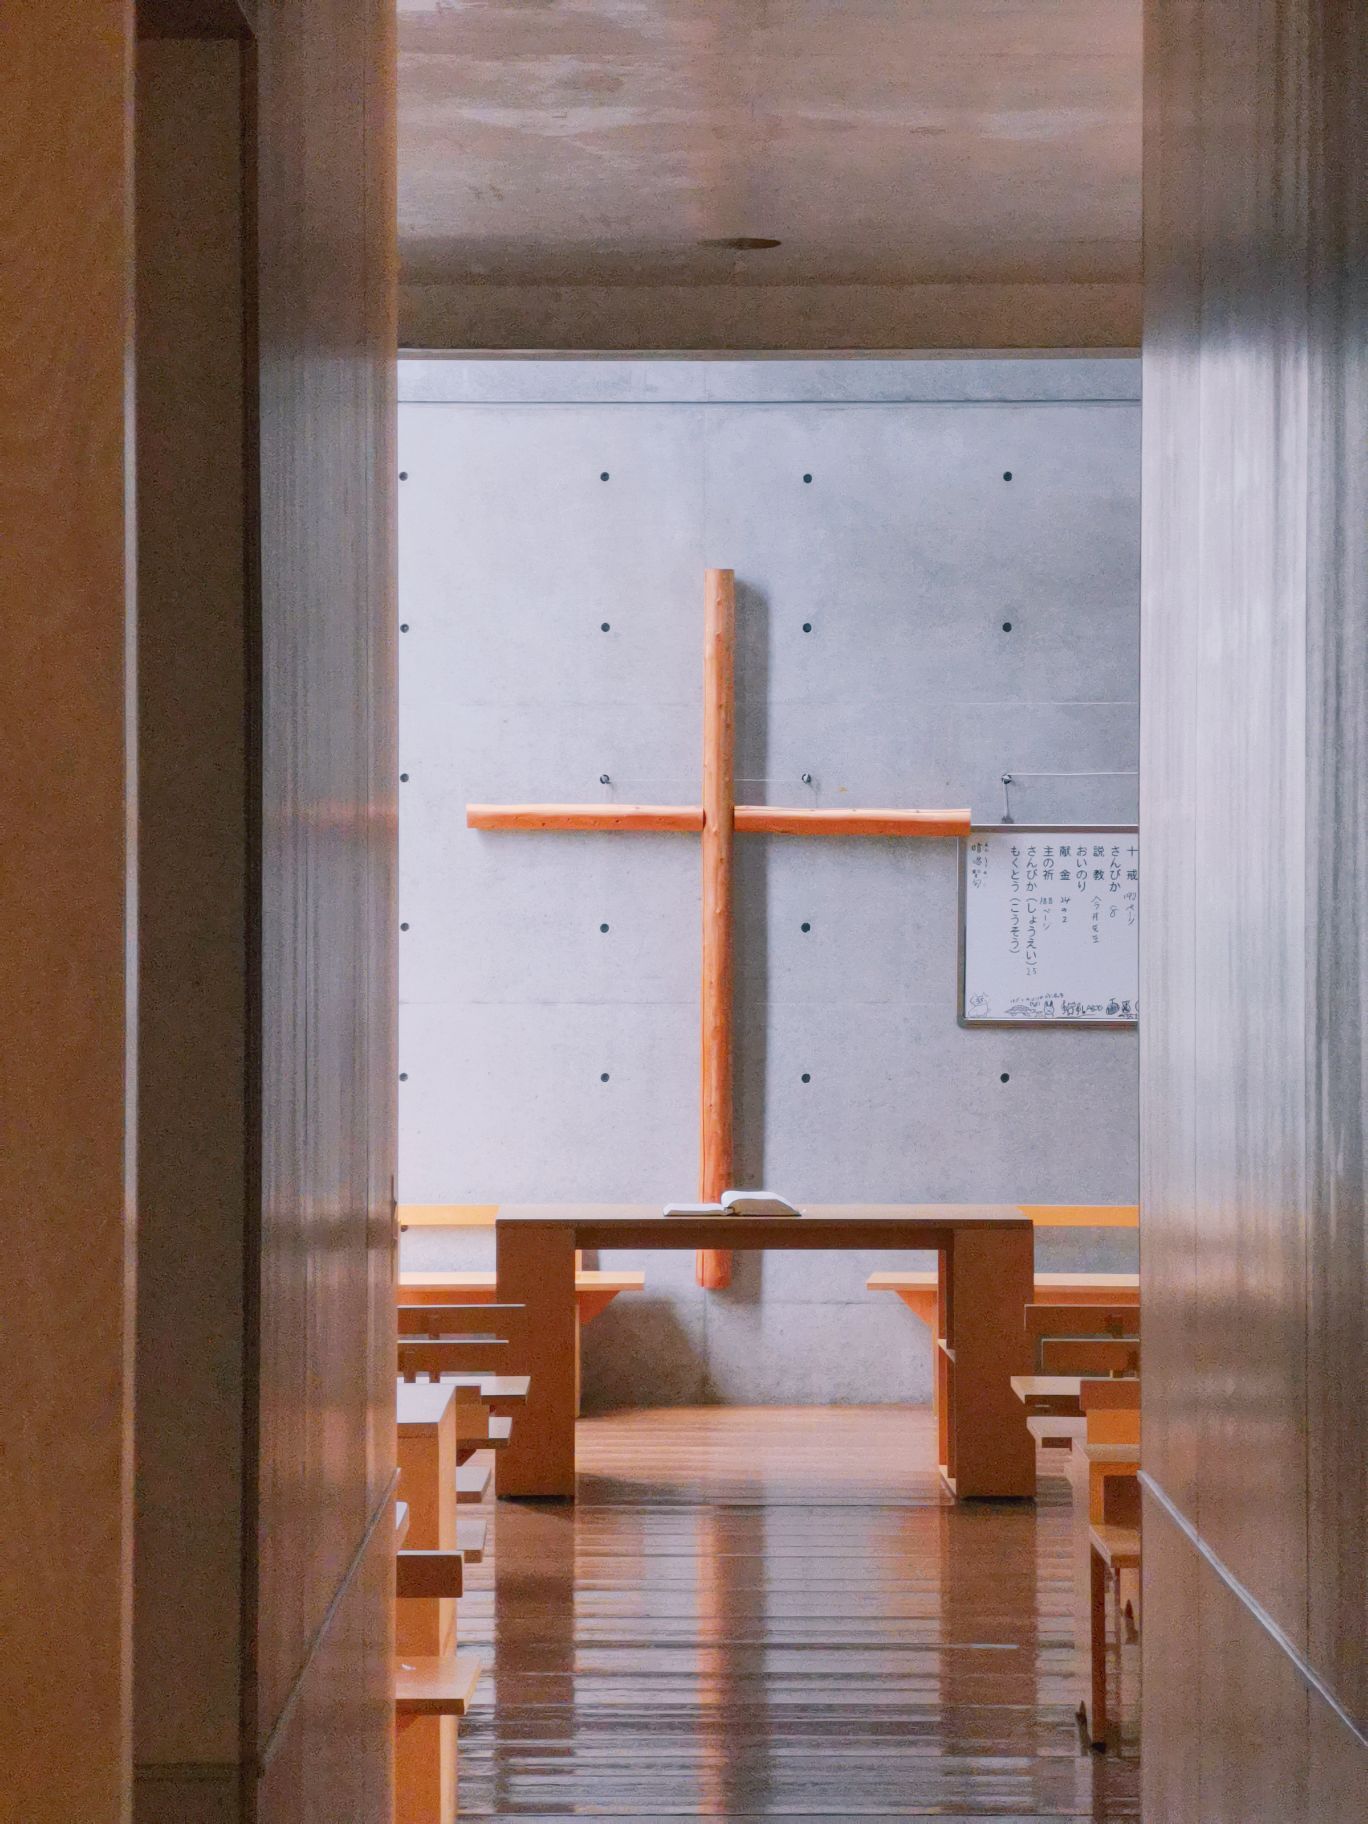 日本光之教堂是安藤忠雄很杰出的设计  光影的魅力让人平和 虽然不是天主教徒，但在设计方面还是值得一去